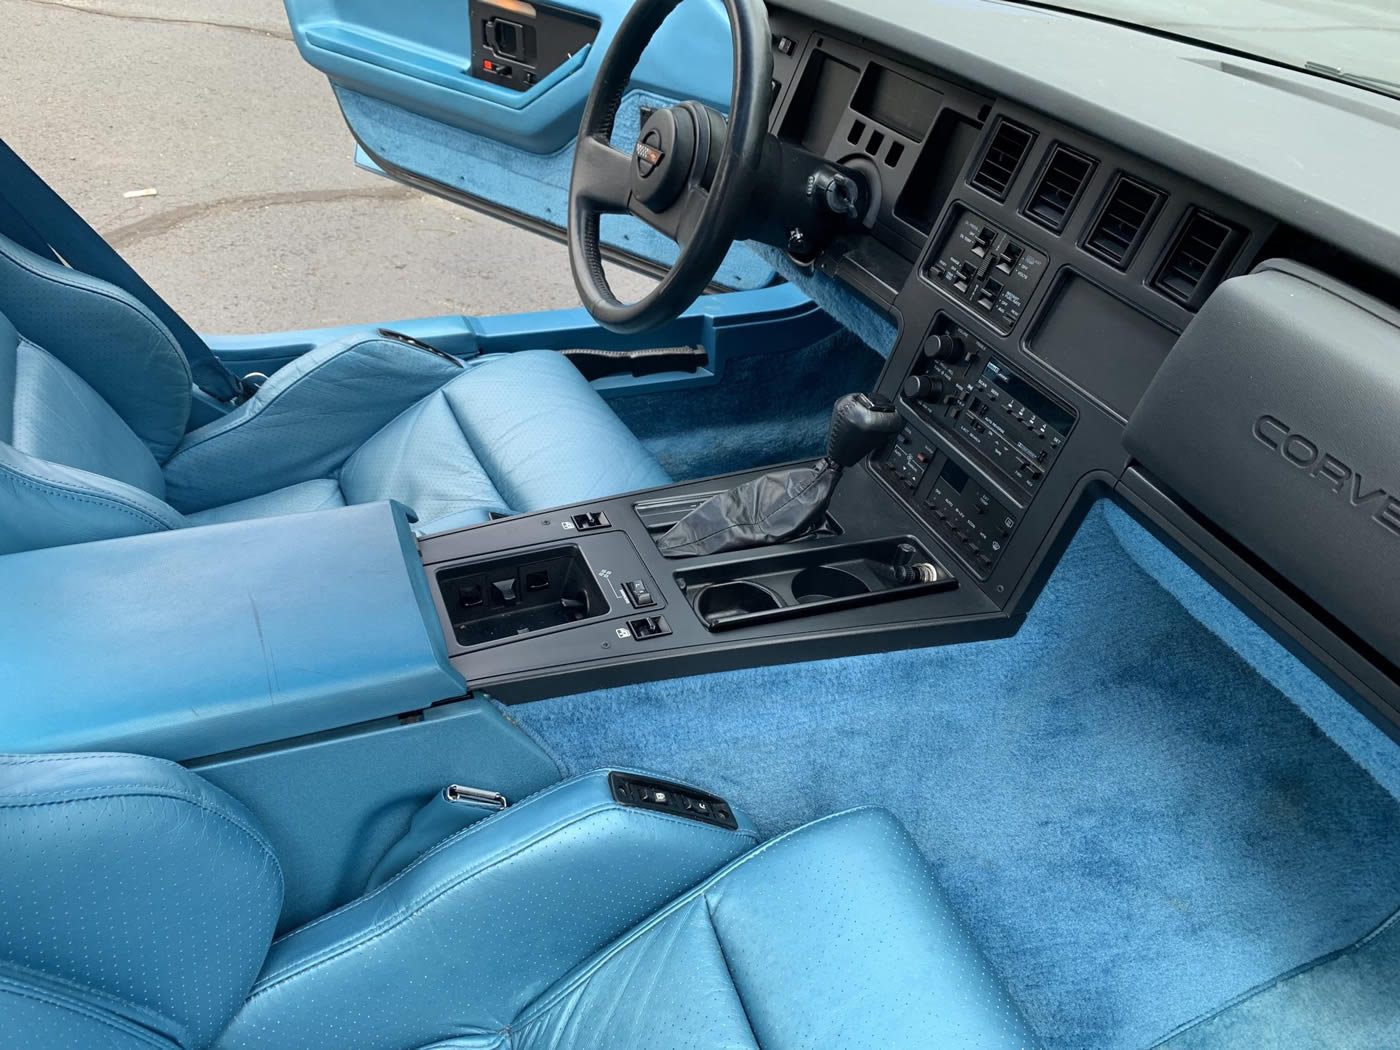 1987 Corvette Coupe in Medium Blue Metallic